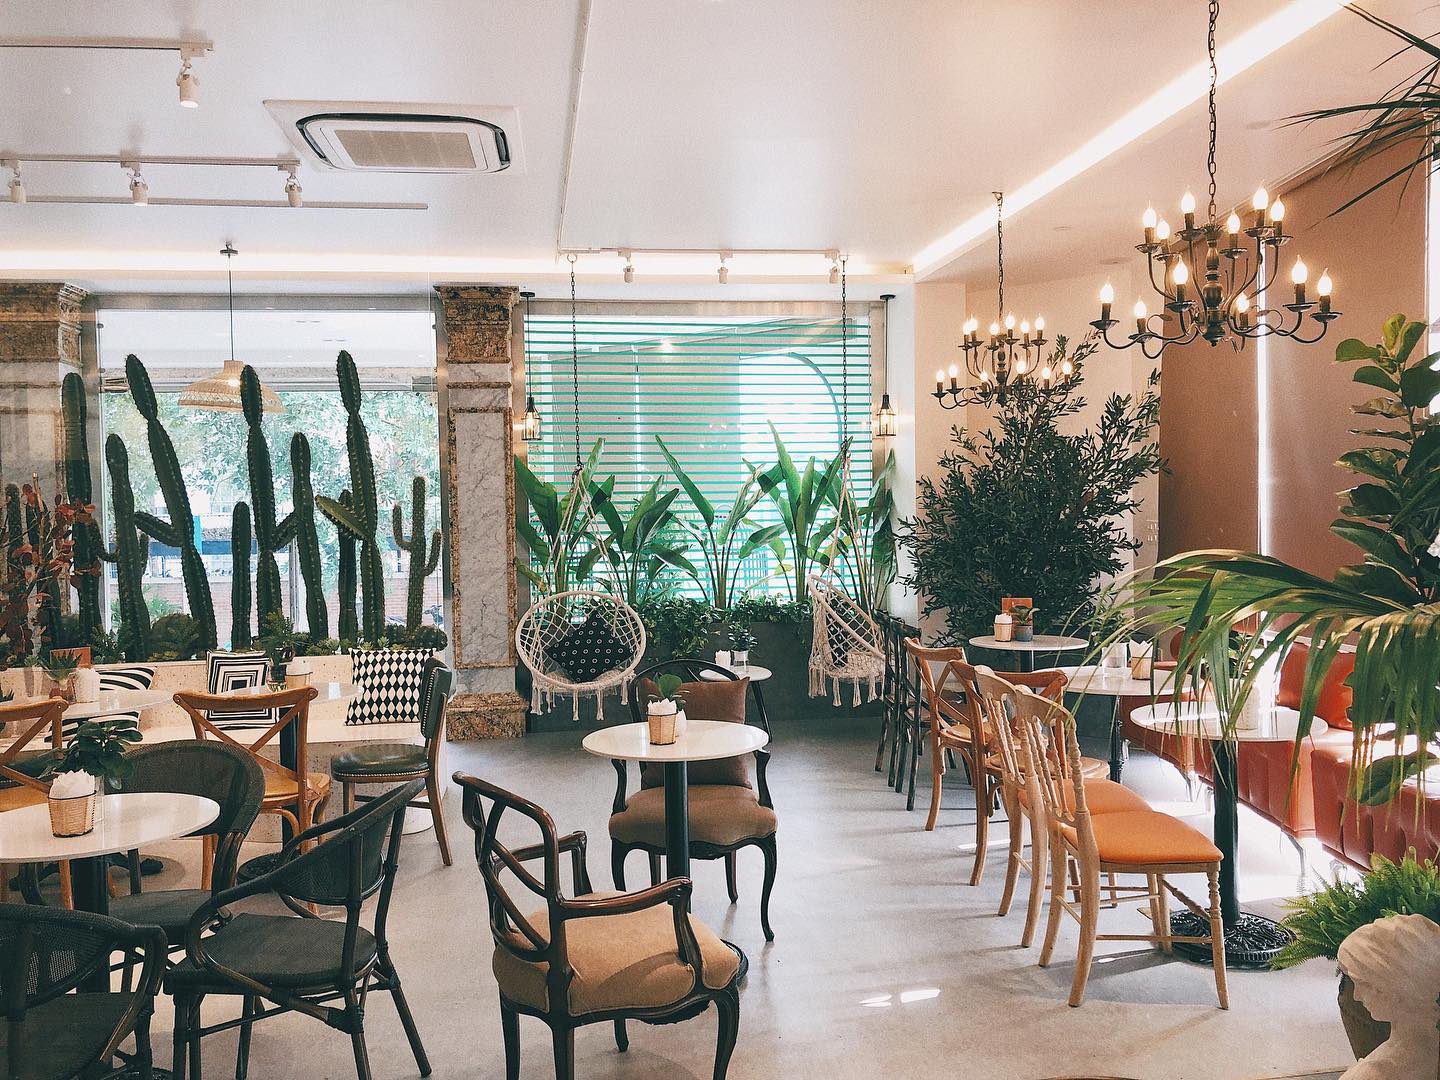 Với thiết kế đẹp mắt, không gian ấm cúng và menu đa dạng, quán luôn thu hút khách đến thưởng thức những ly cà phê ngon và thư giãn sau những giờ làm việc căng thẳng. Các bạn trẻ có thể thỏa sức \